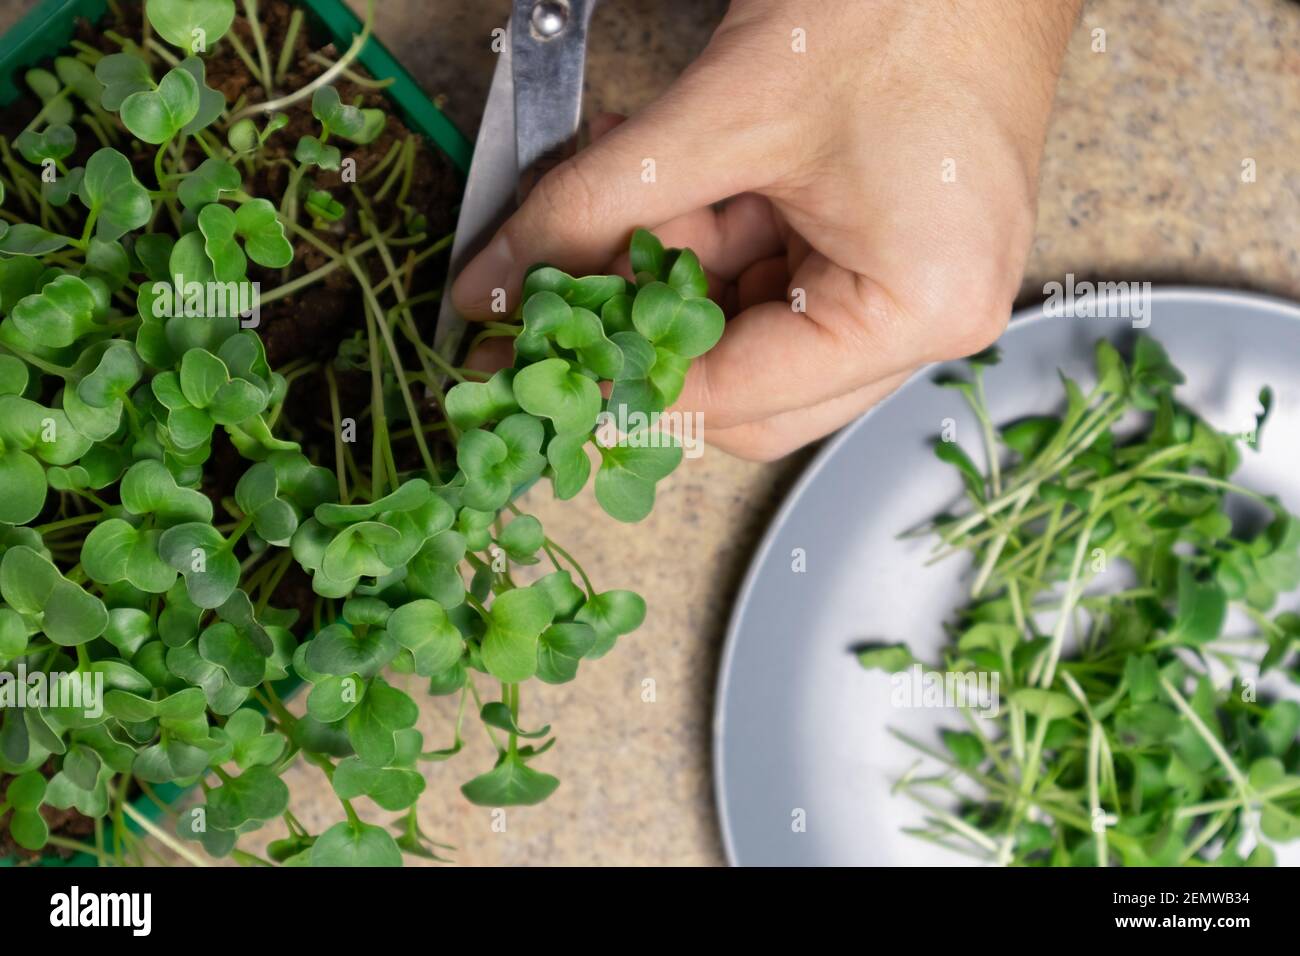 Les mains de l'homme coupent des pousses de radis micro-verts fraîches. Pousses crues microverts, alimentation saine. Banque D'Images